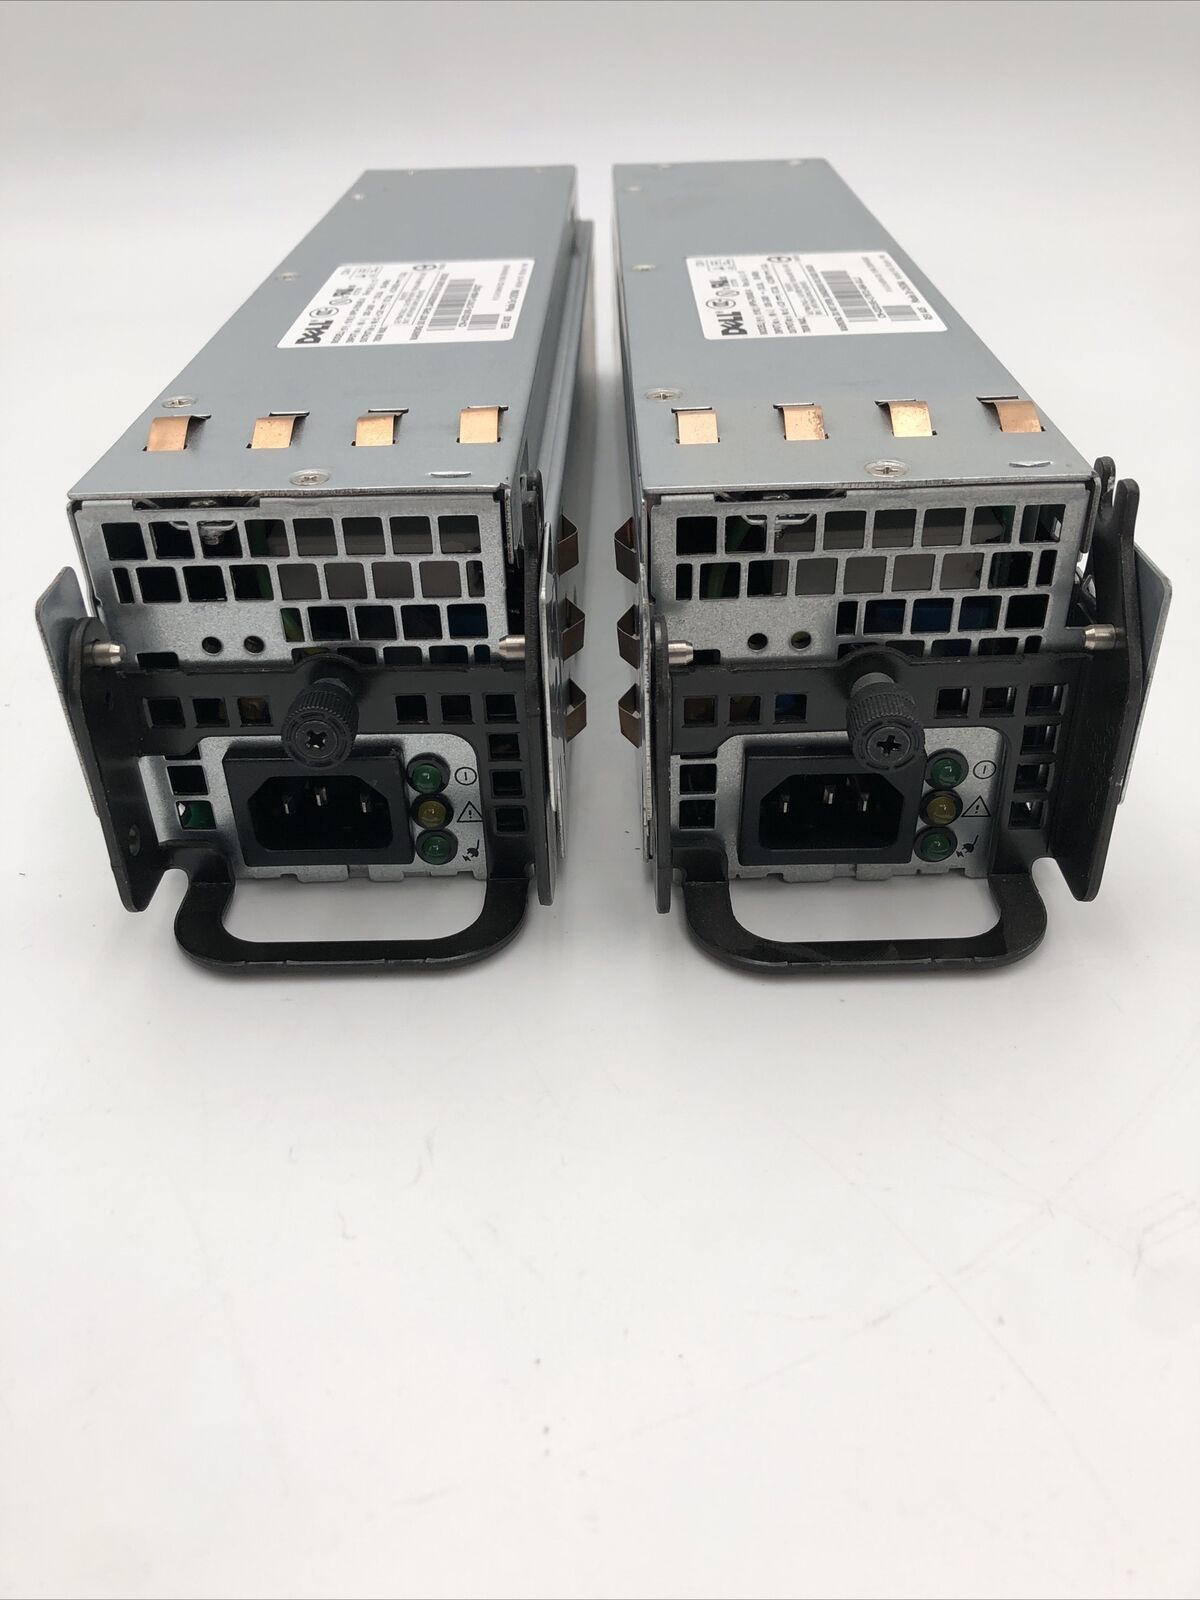 Lot of 2 Dell NPS-700AB-A 700 Watt Power Supply Units READ